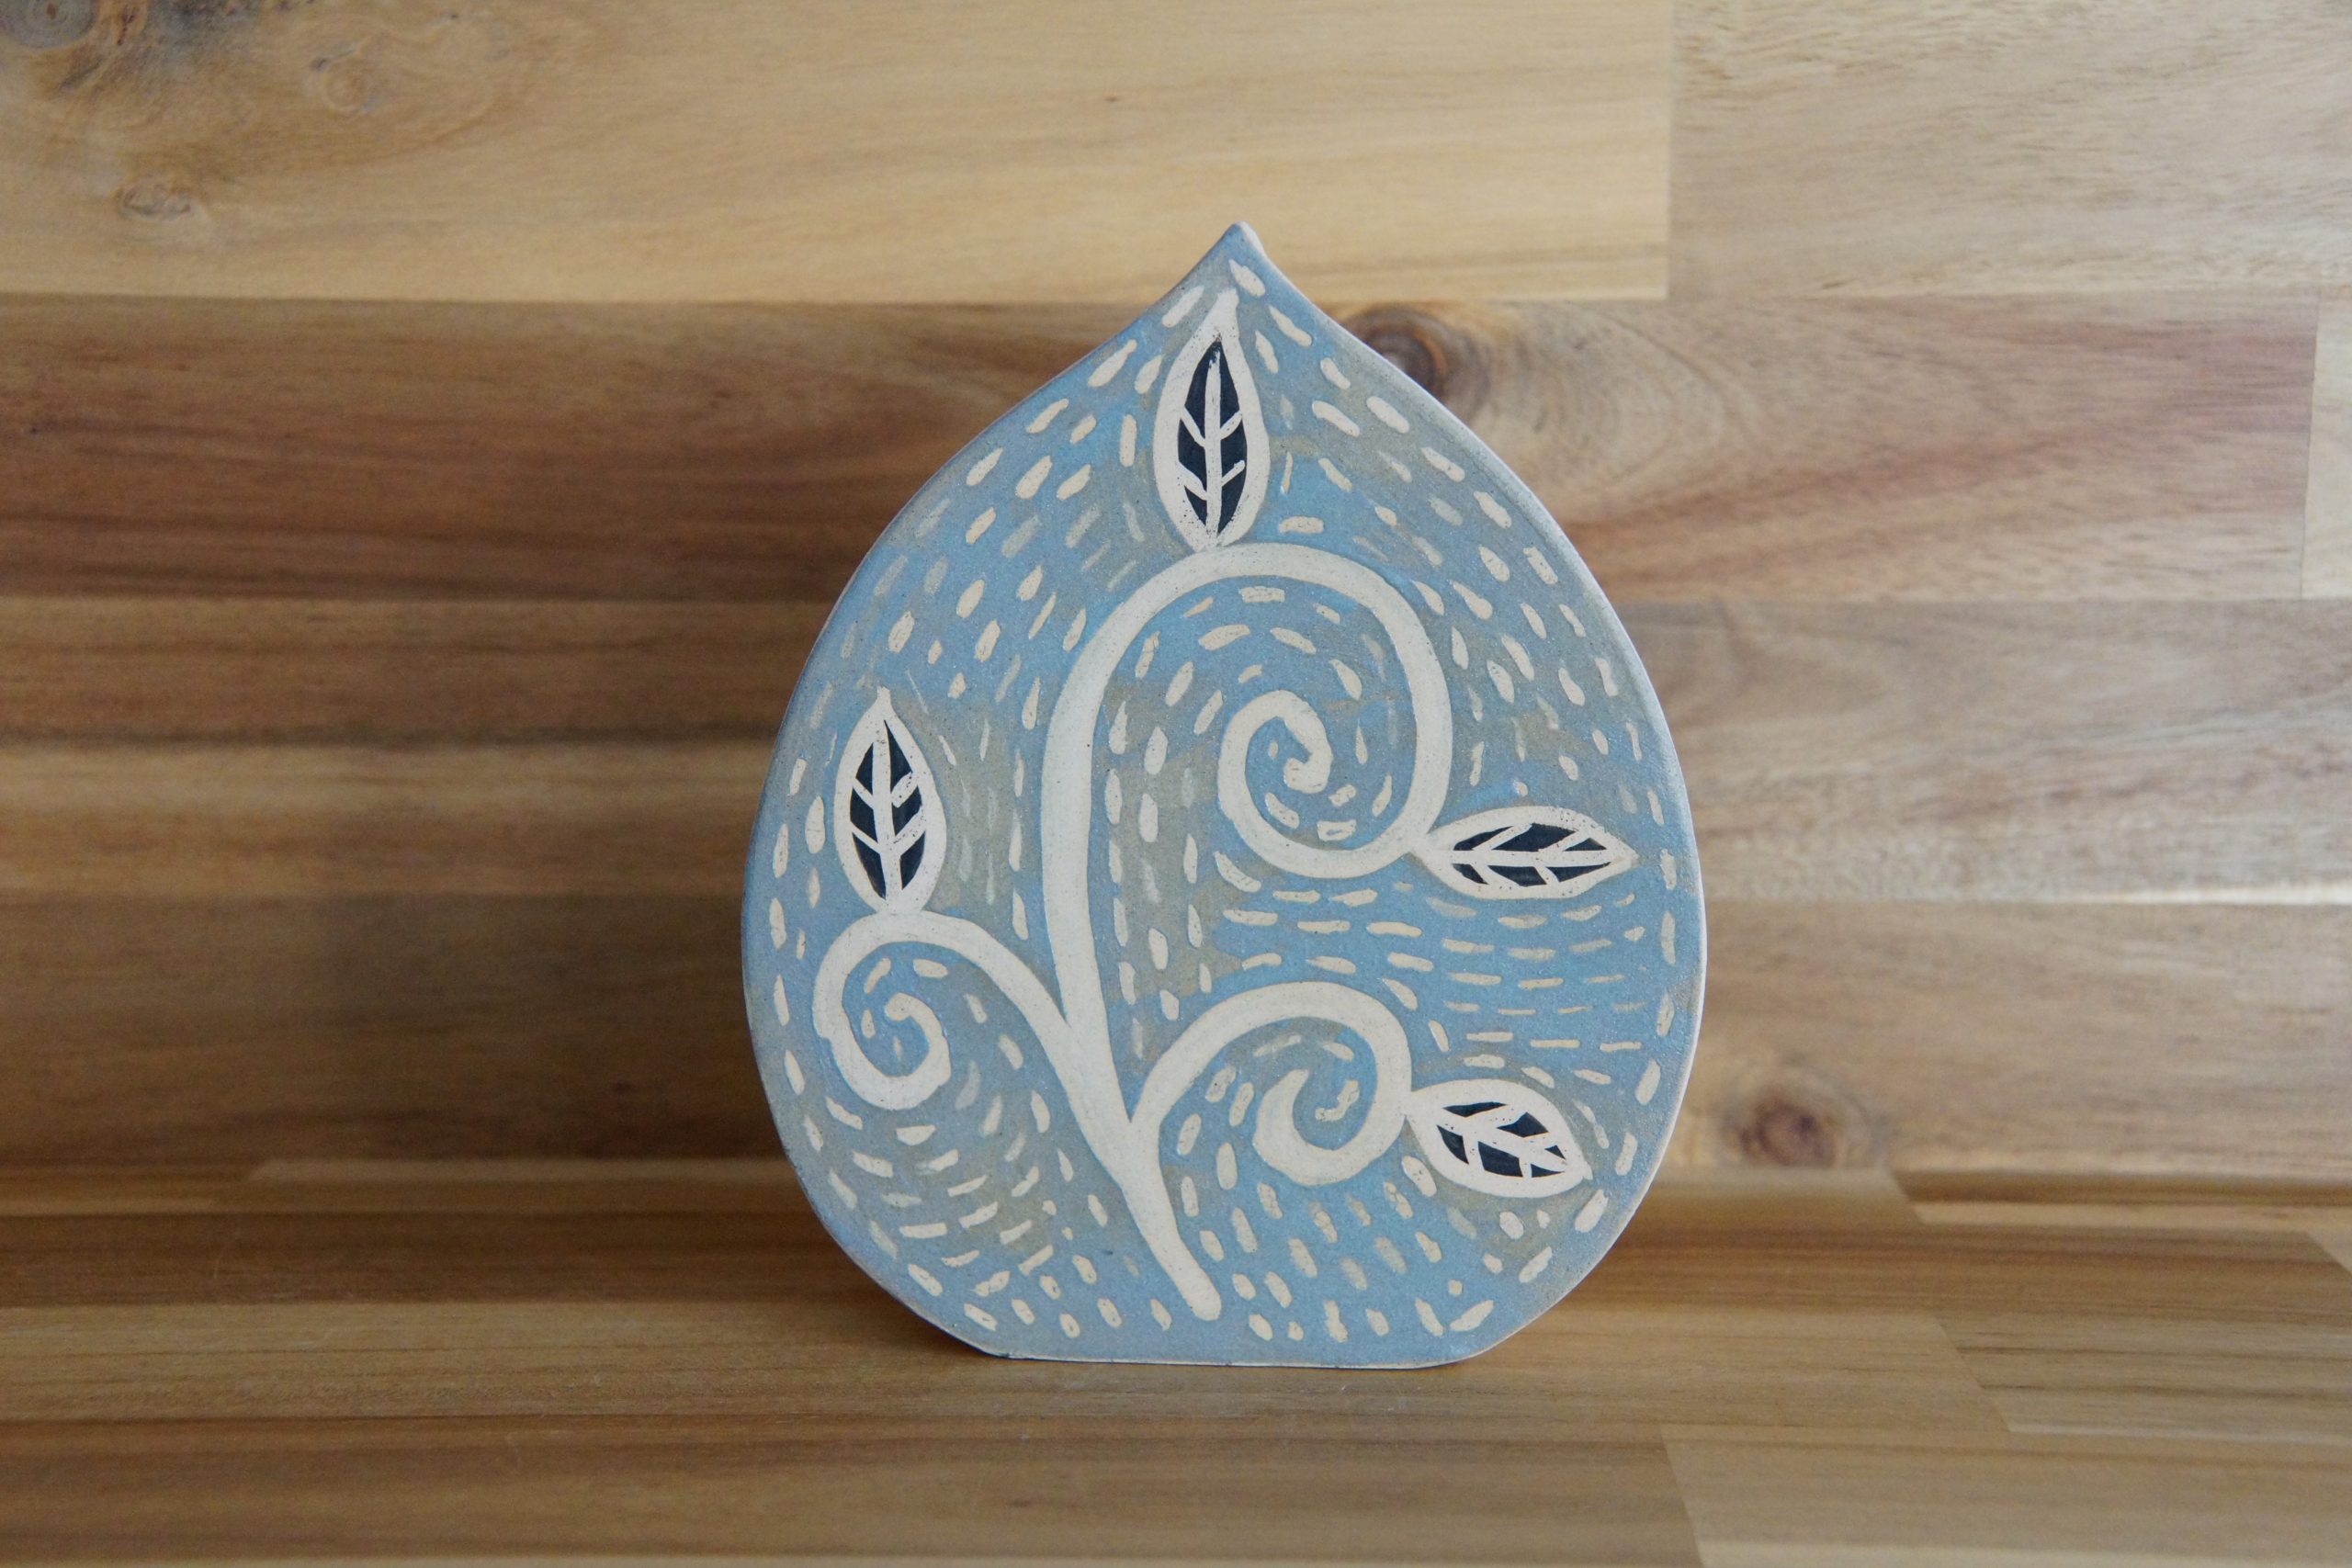 A blue glazed ceramic pottery vase with patterned finish